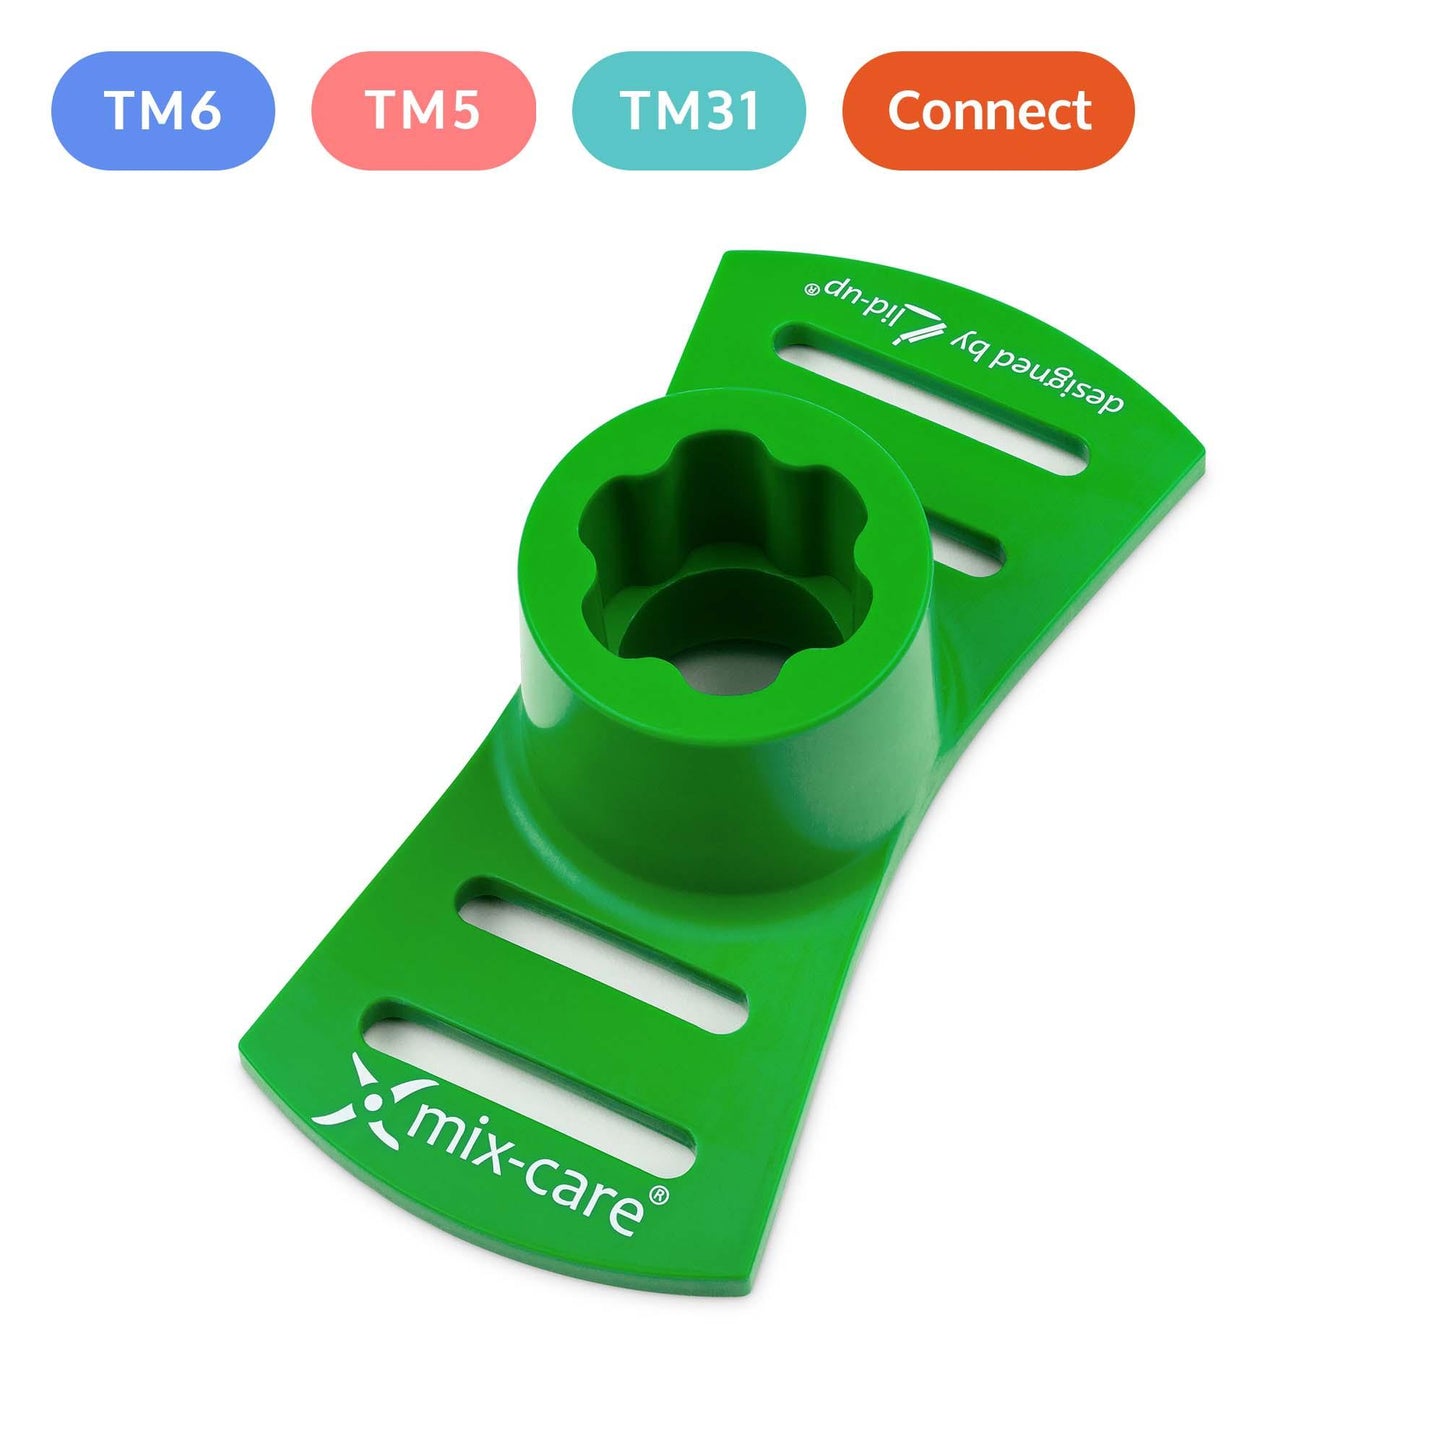 Lid-up Mix-Care Geschirrspülmaschineneinsatz kompatibel mit dem Mixmesser des Thermomix - Mixcover - Lid-up